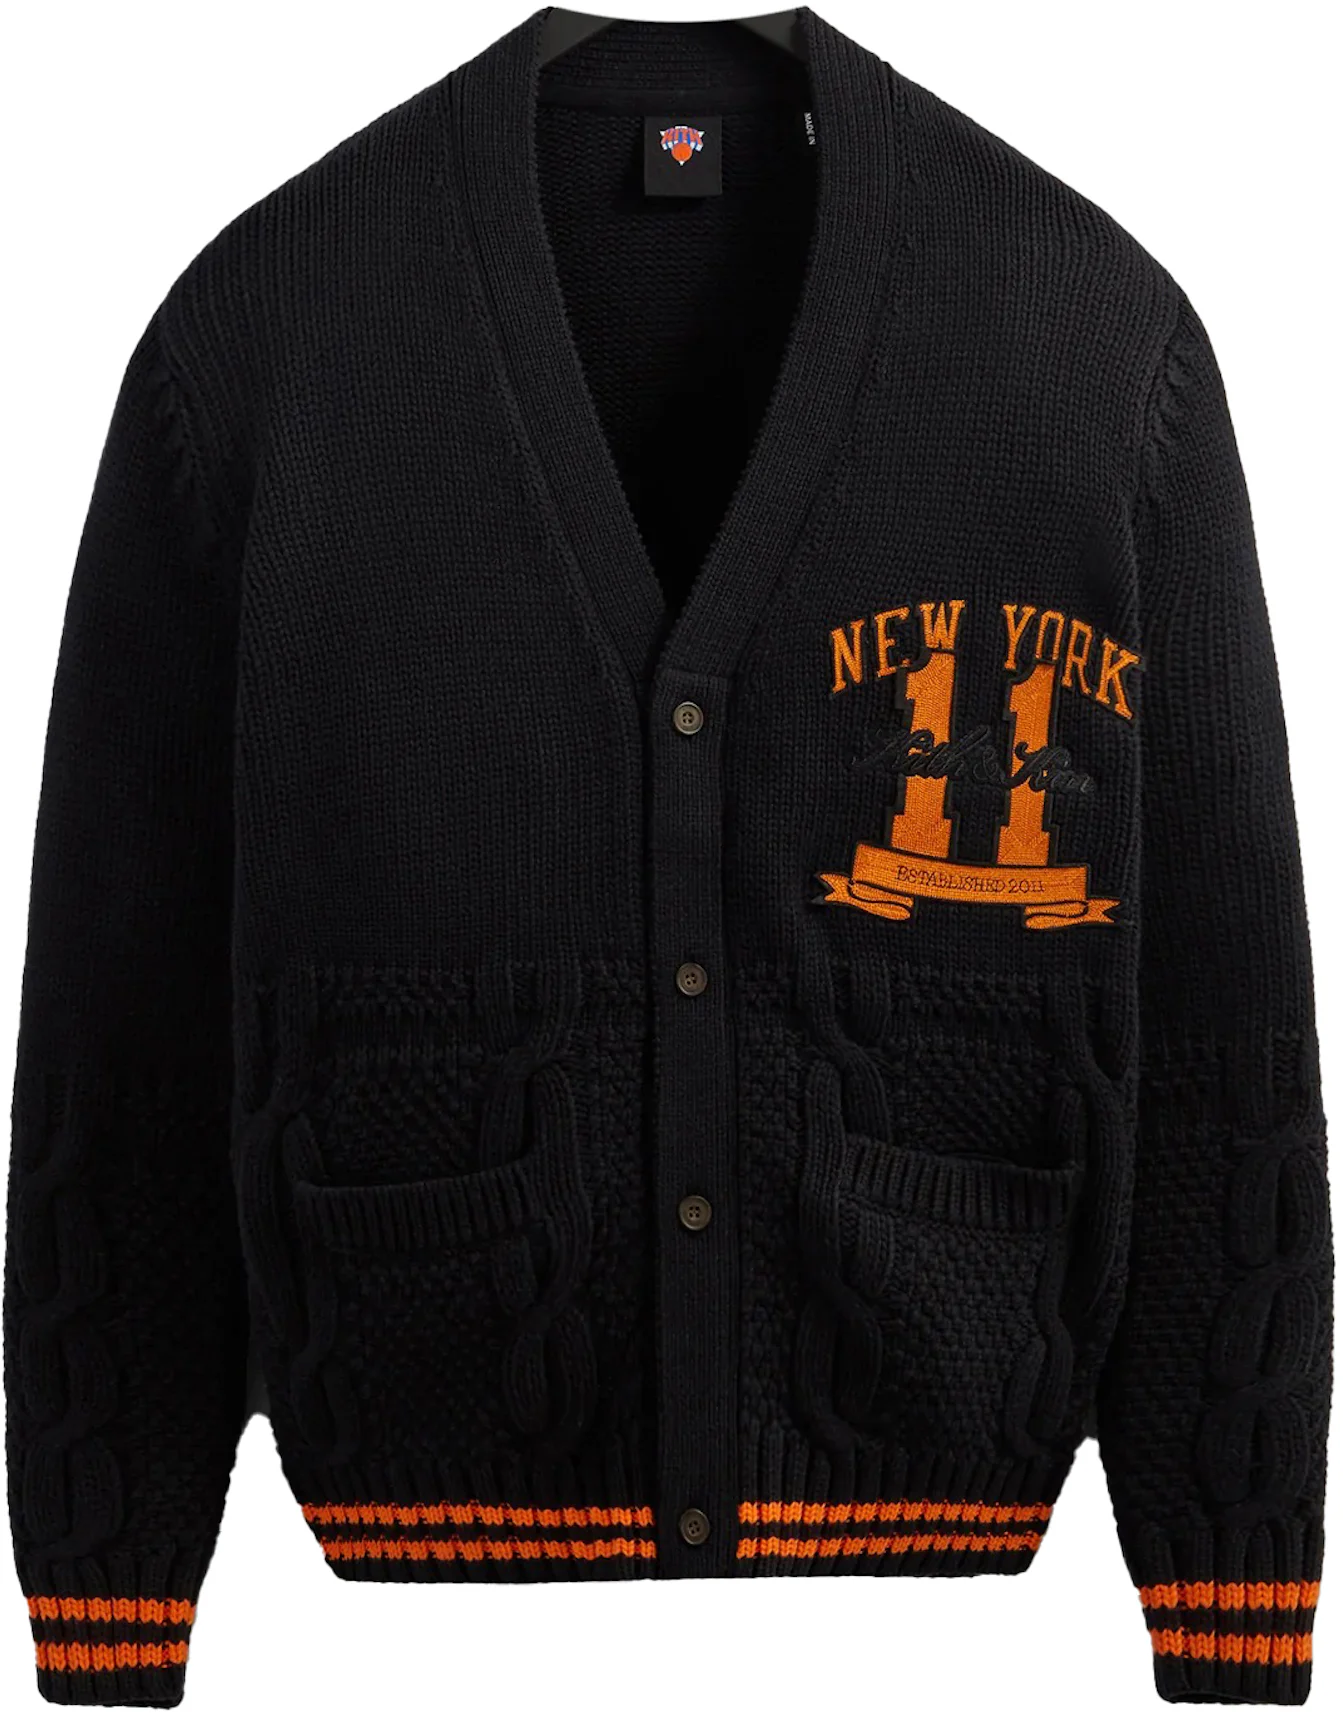 Kith New York Knicks Wool Coaches Jacket BlackKith New York Knicks